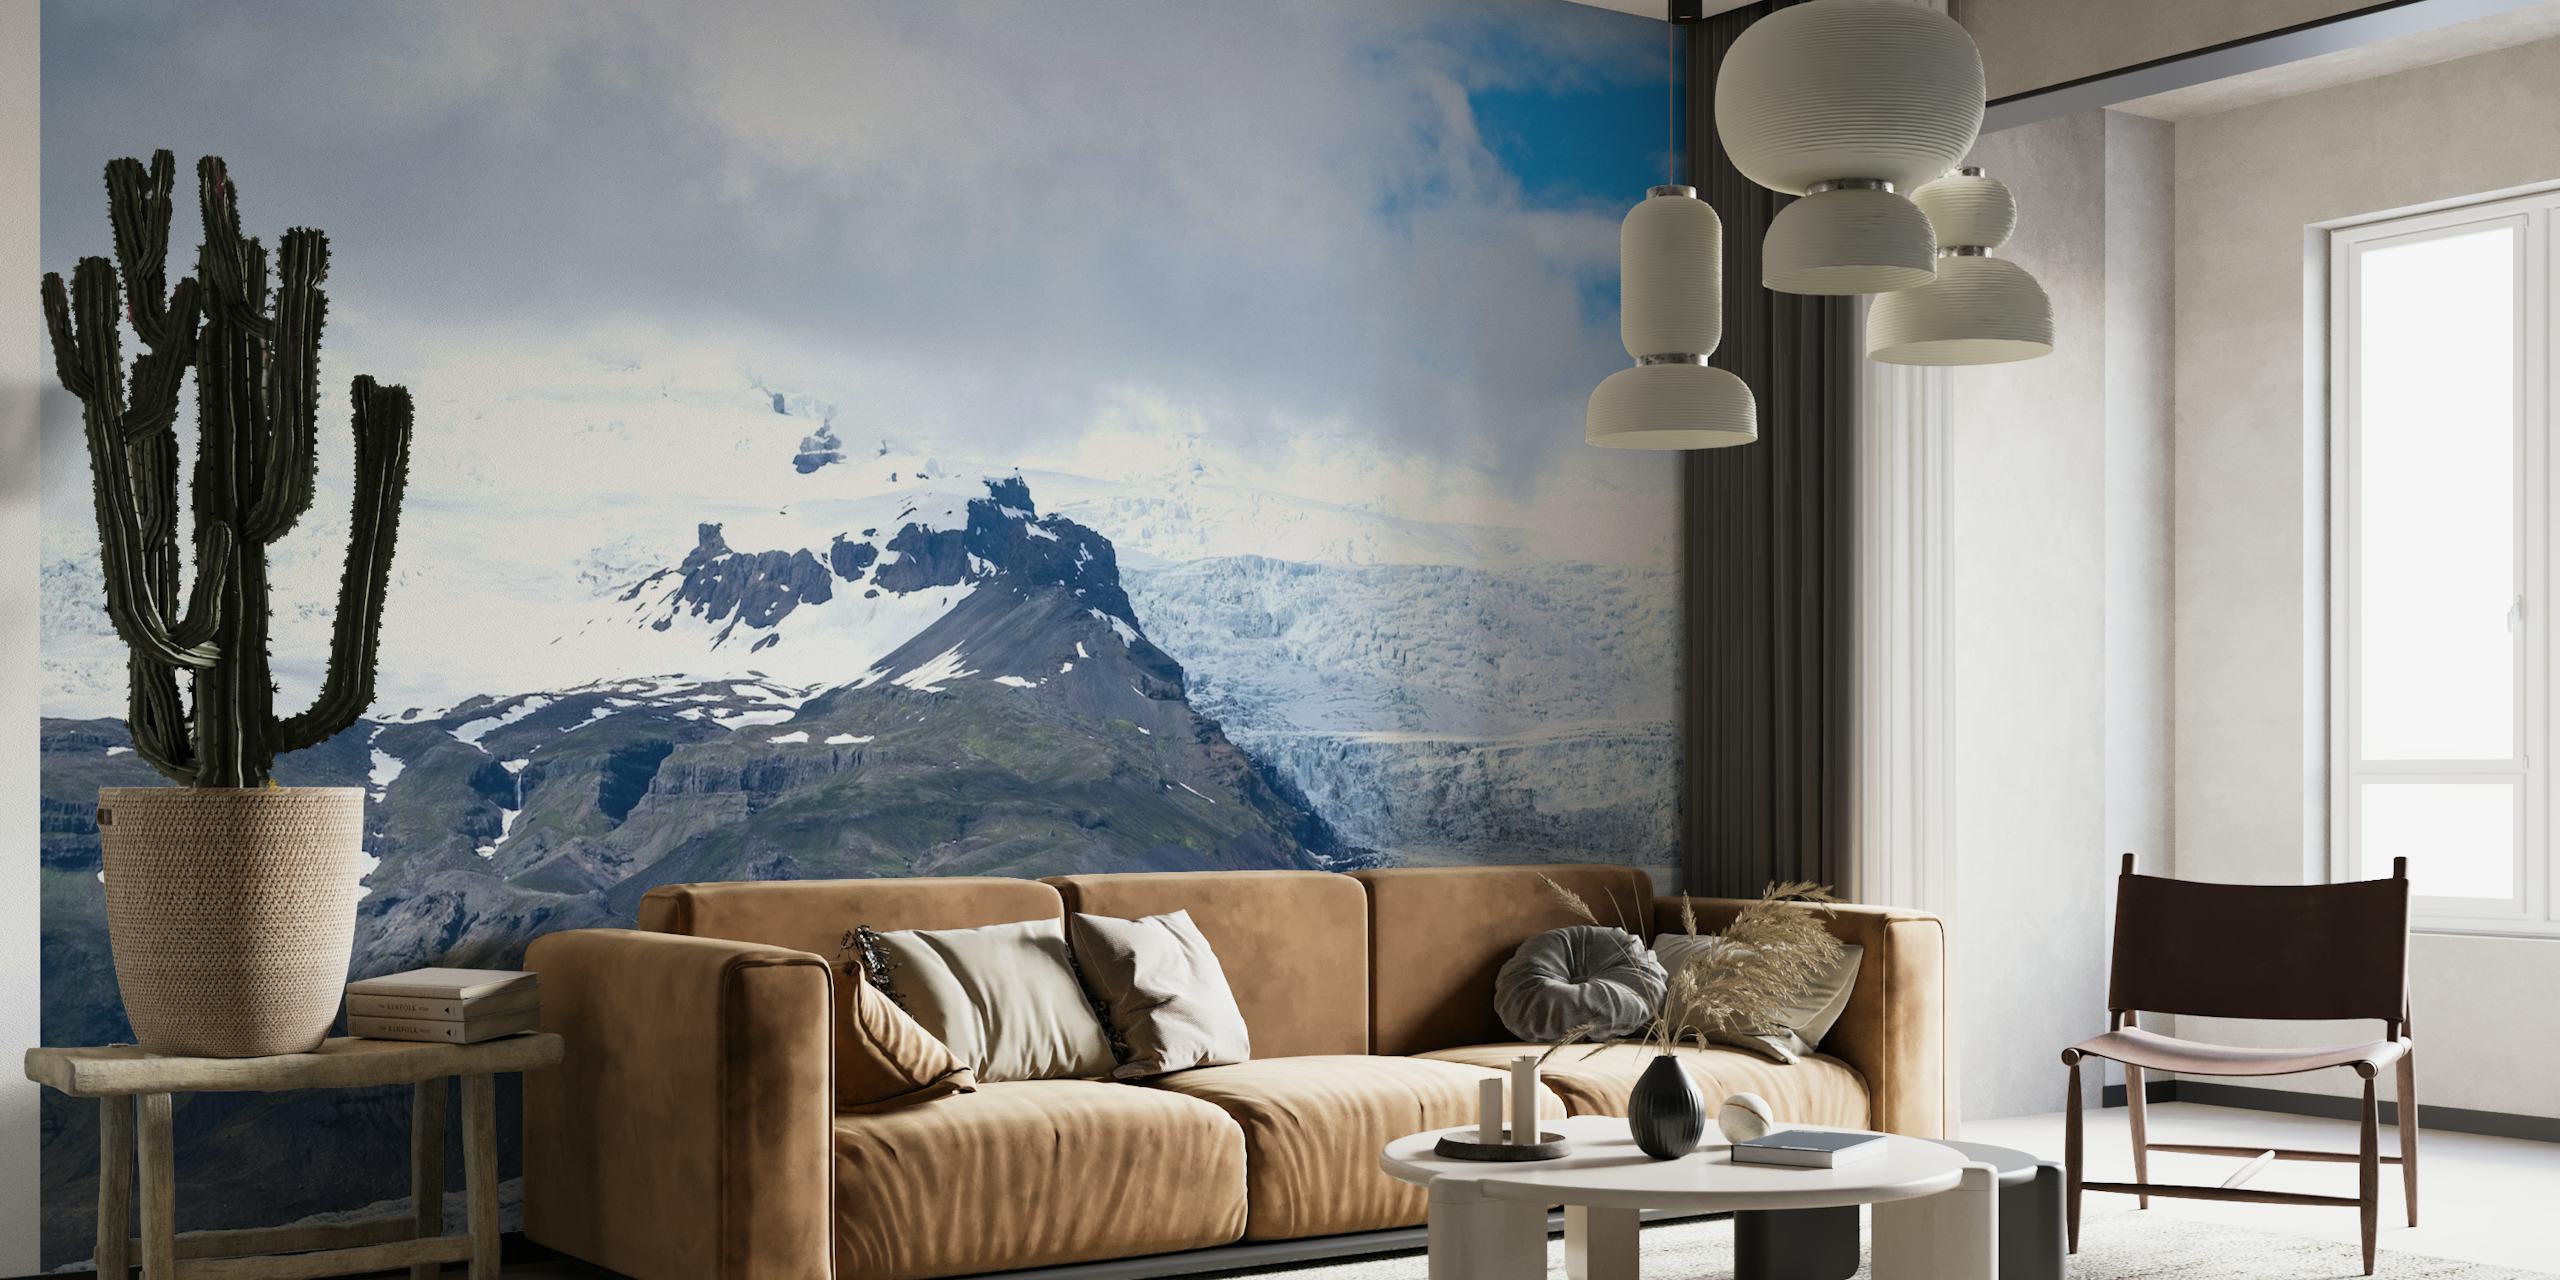 Breiðamerkurjökull-gletsjermuurschildering met blauwe ijzige tinten en bergtoppen